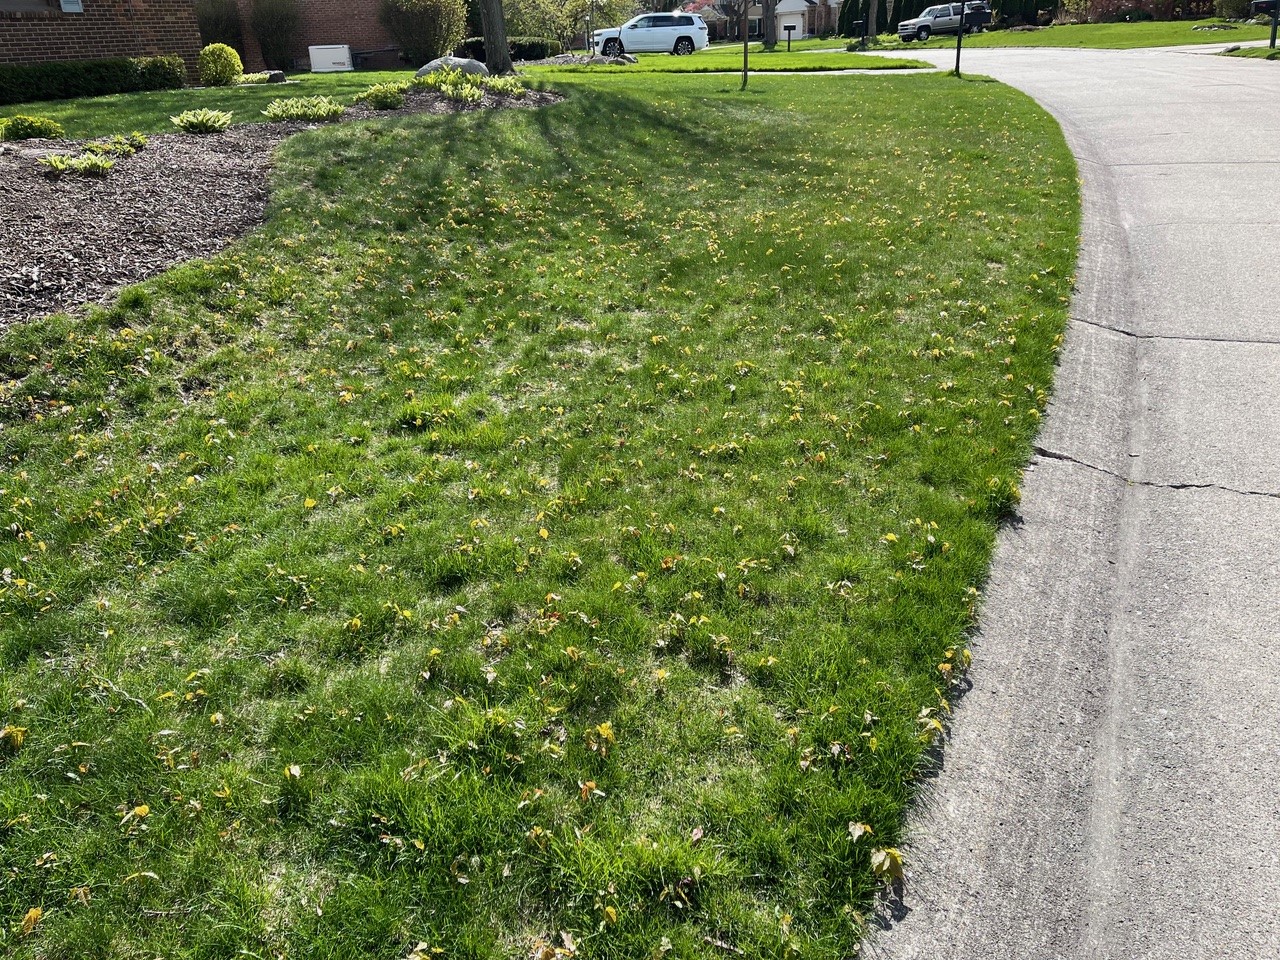 Maple seedlings in a lawn.